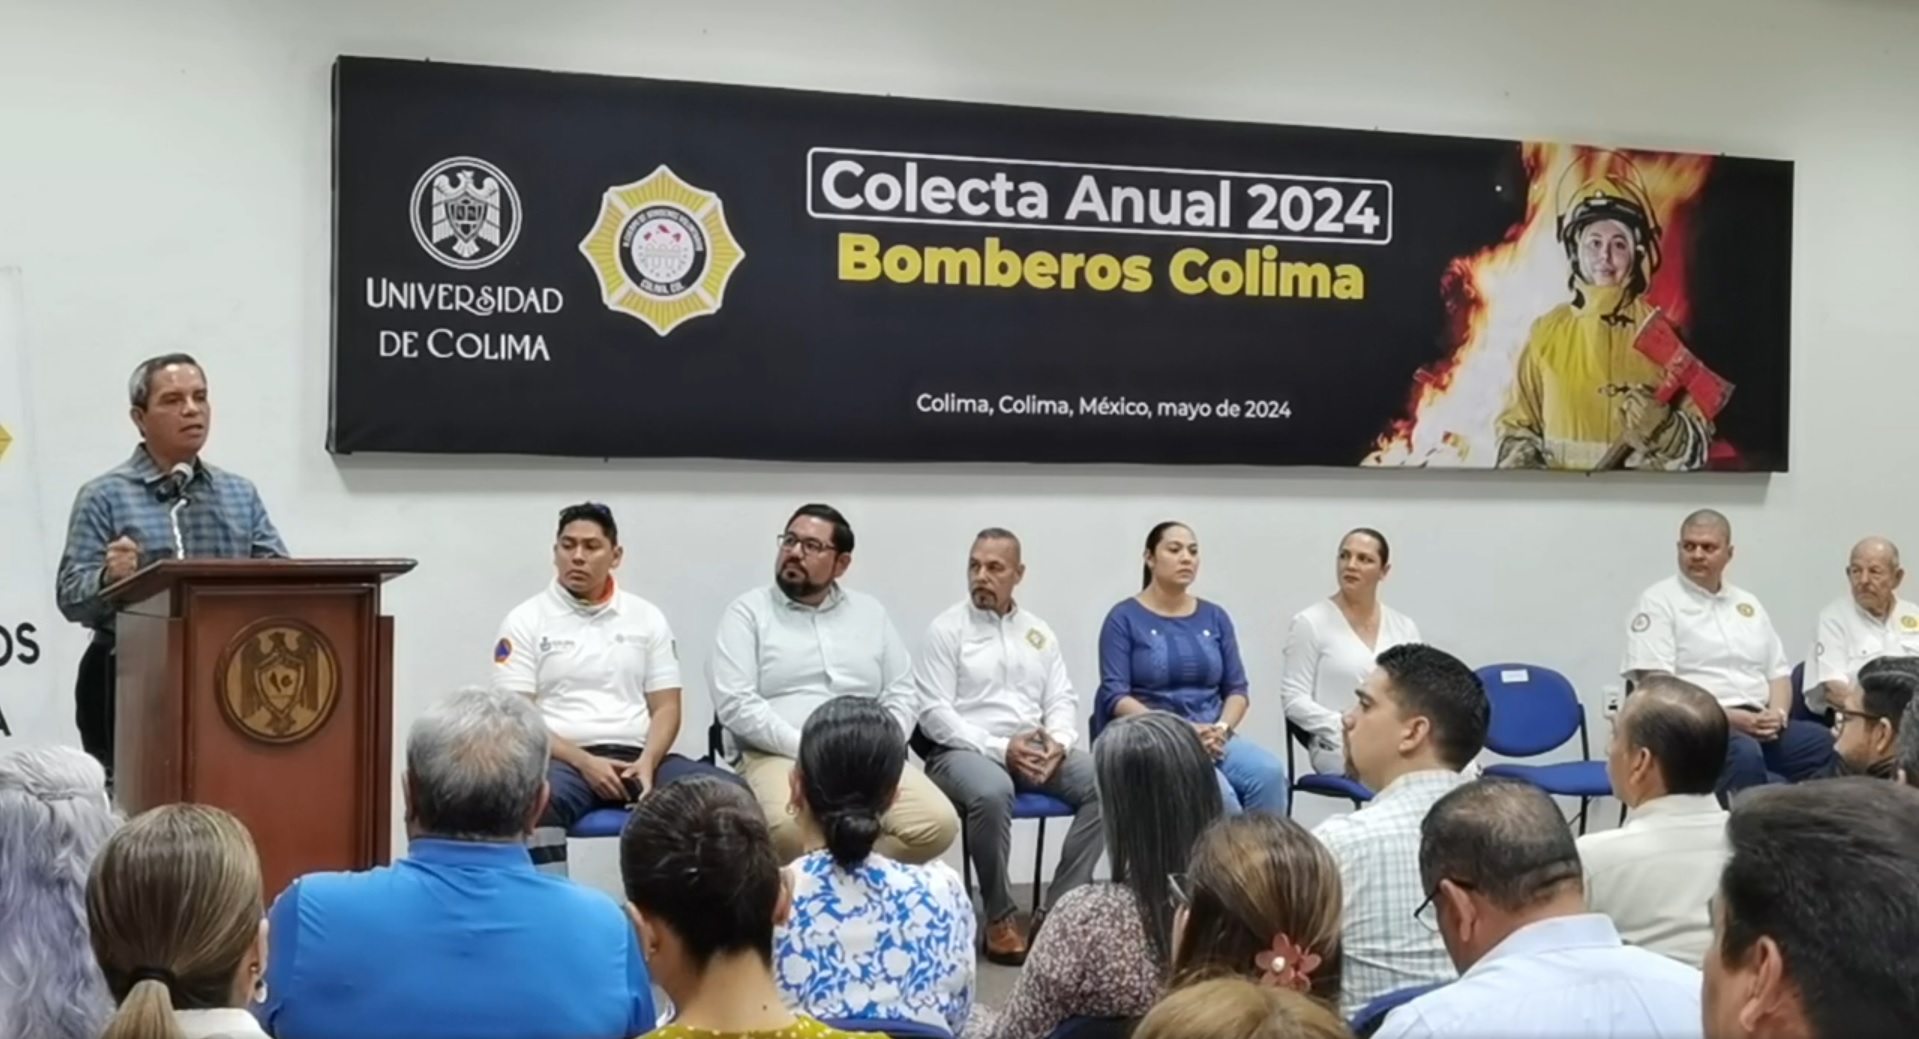 El Rector de la Universidad de Colima, Christian Torres Ortiz Zermeño, participa en el arranque oficial de la Colecta Anual Bomberos 2024.